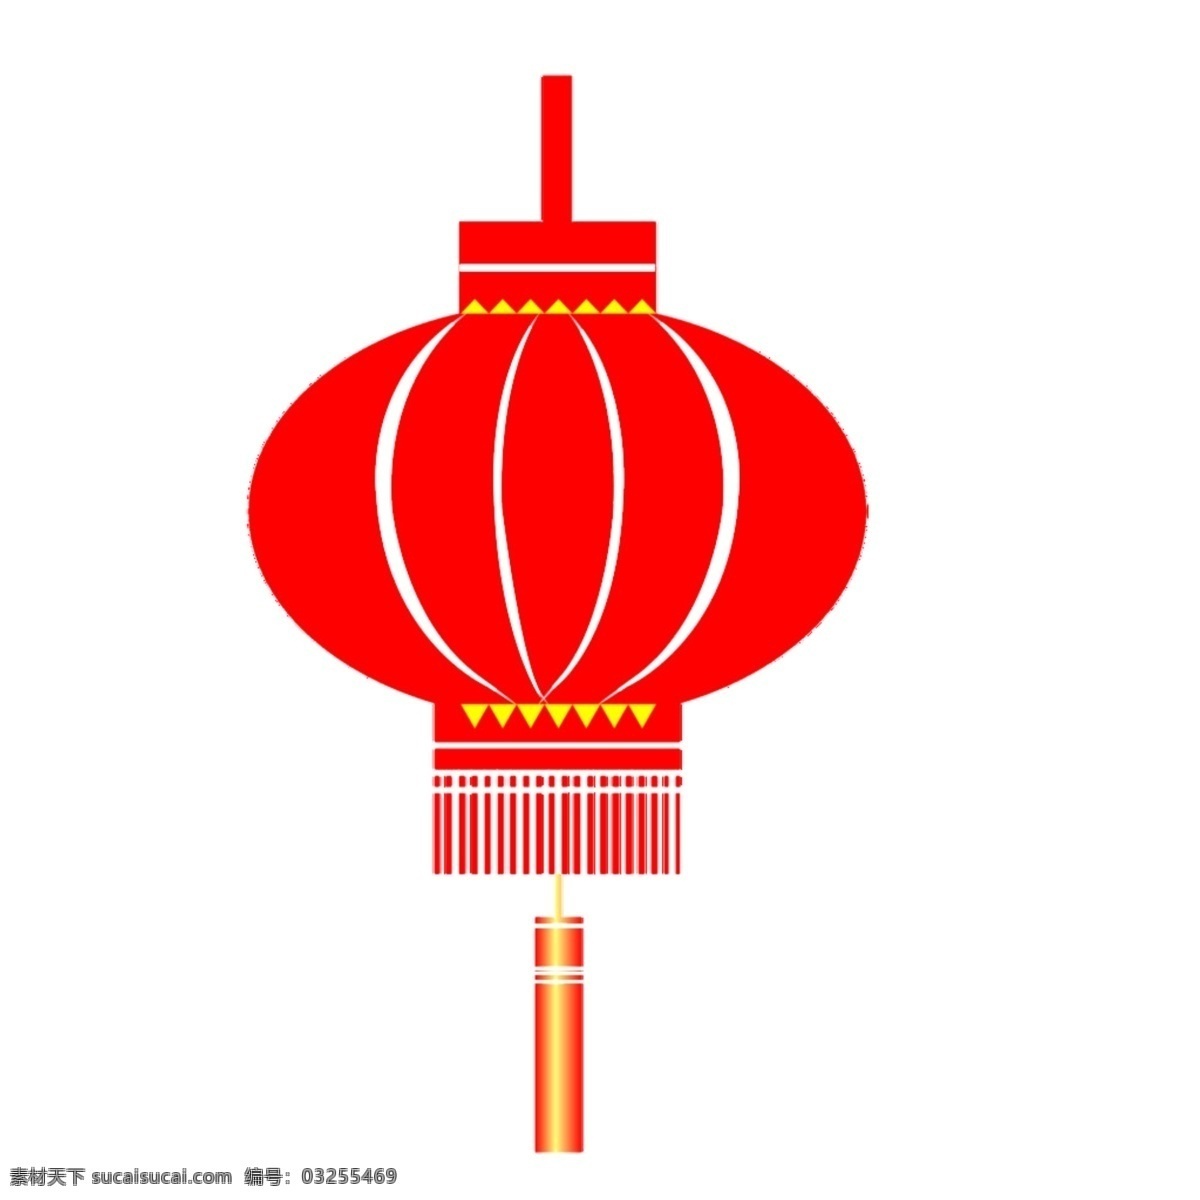 灯笼 大红灯笼 剪纸 马年素材 喜庆 新年素材 元旦 中国元素 免抠图 节日素材 2015 新年 春节 元宵